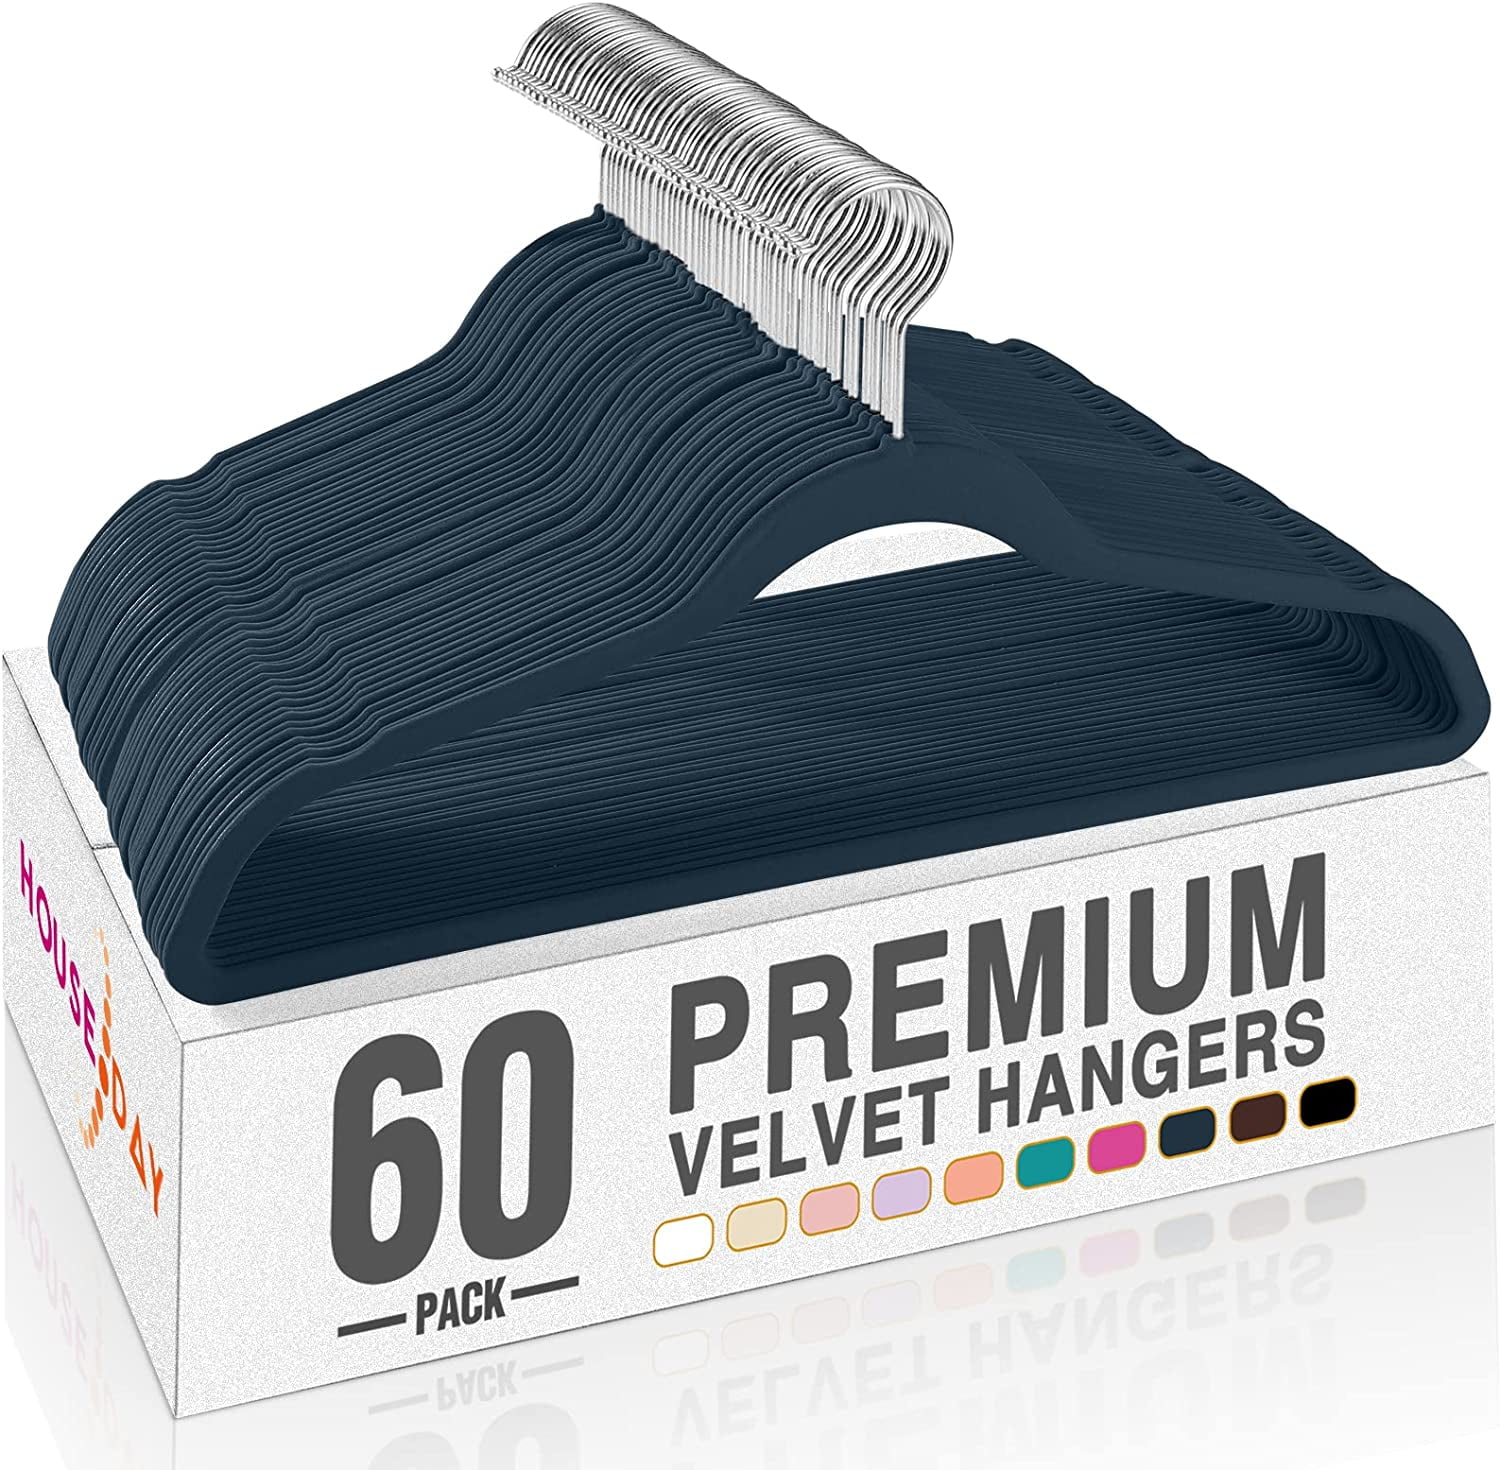  HOUSE DAY Velvet Kids Hangers 60 Pack, Premium